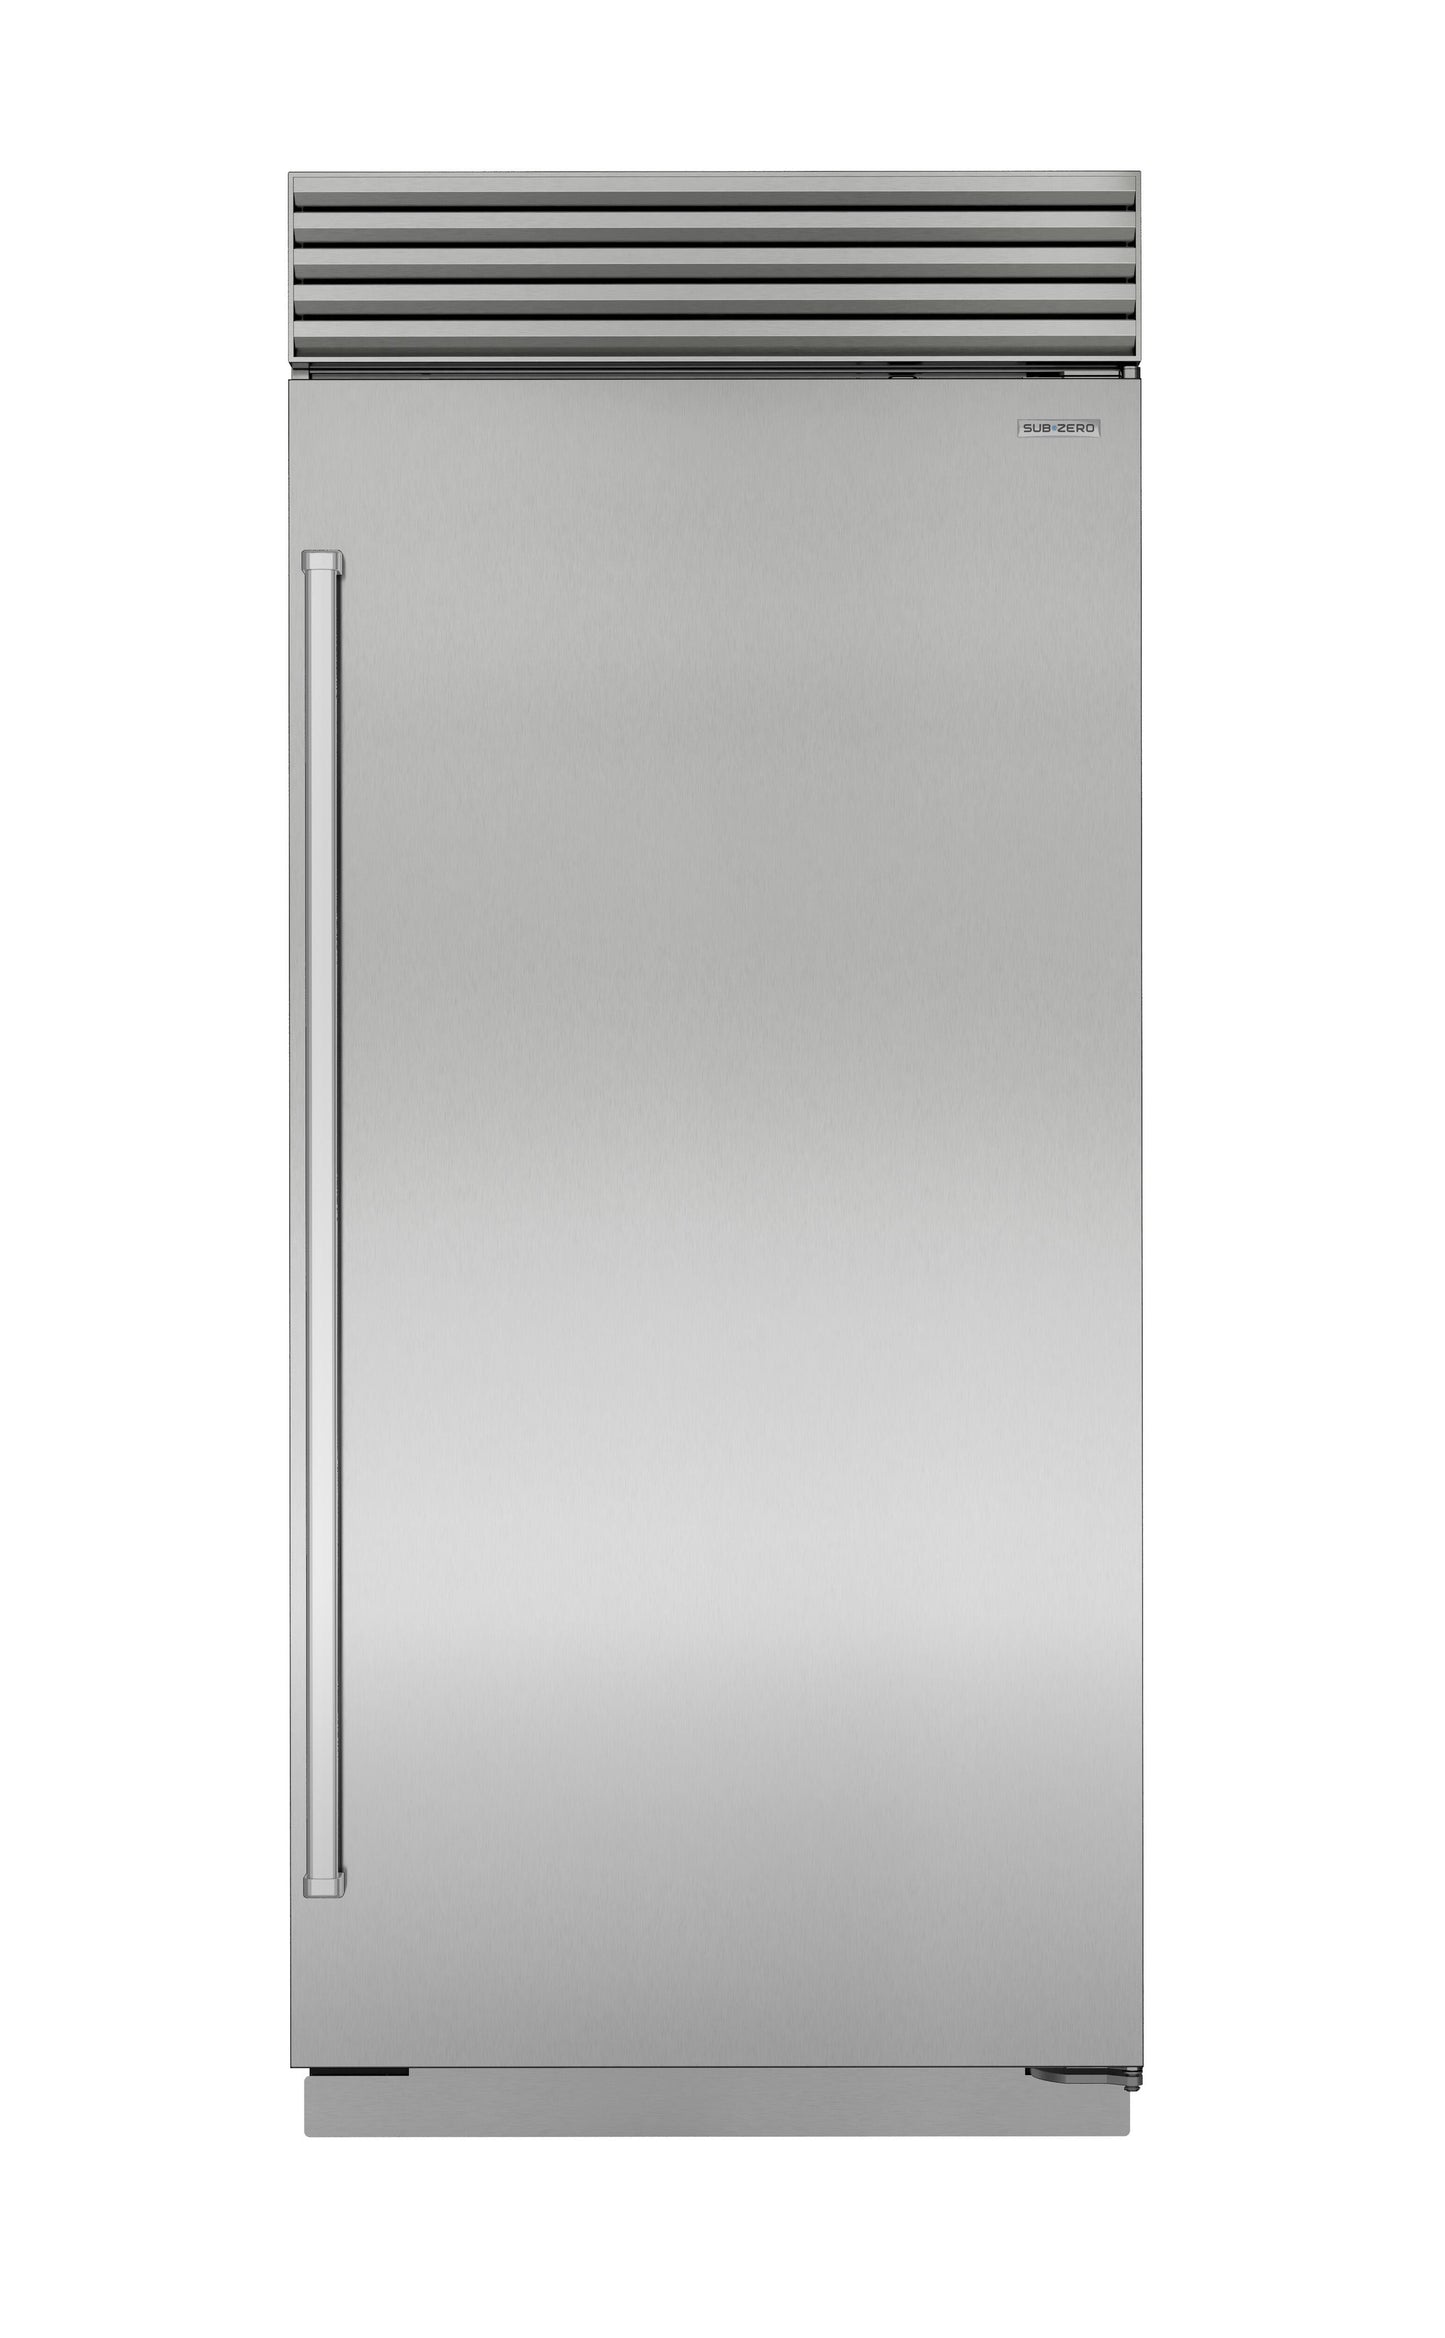 Sub-Zero CL3650FSTL 36" Classic Freezer